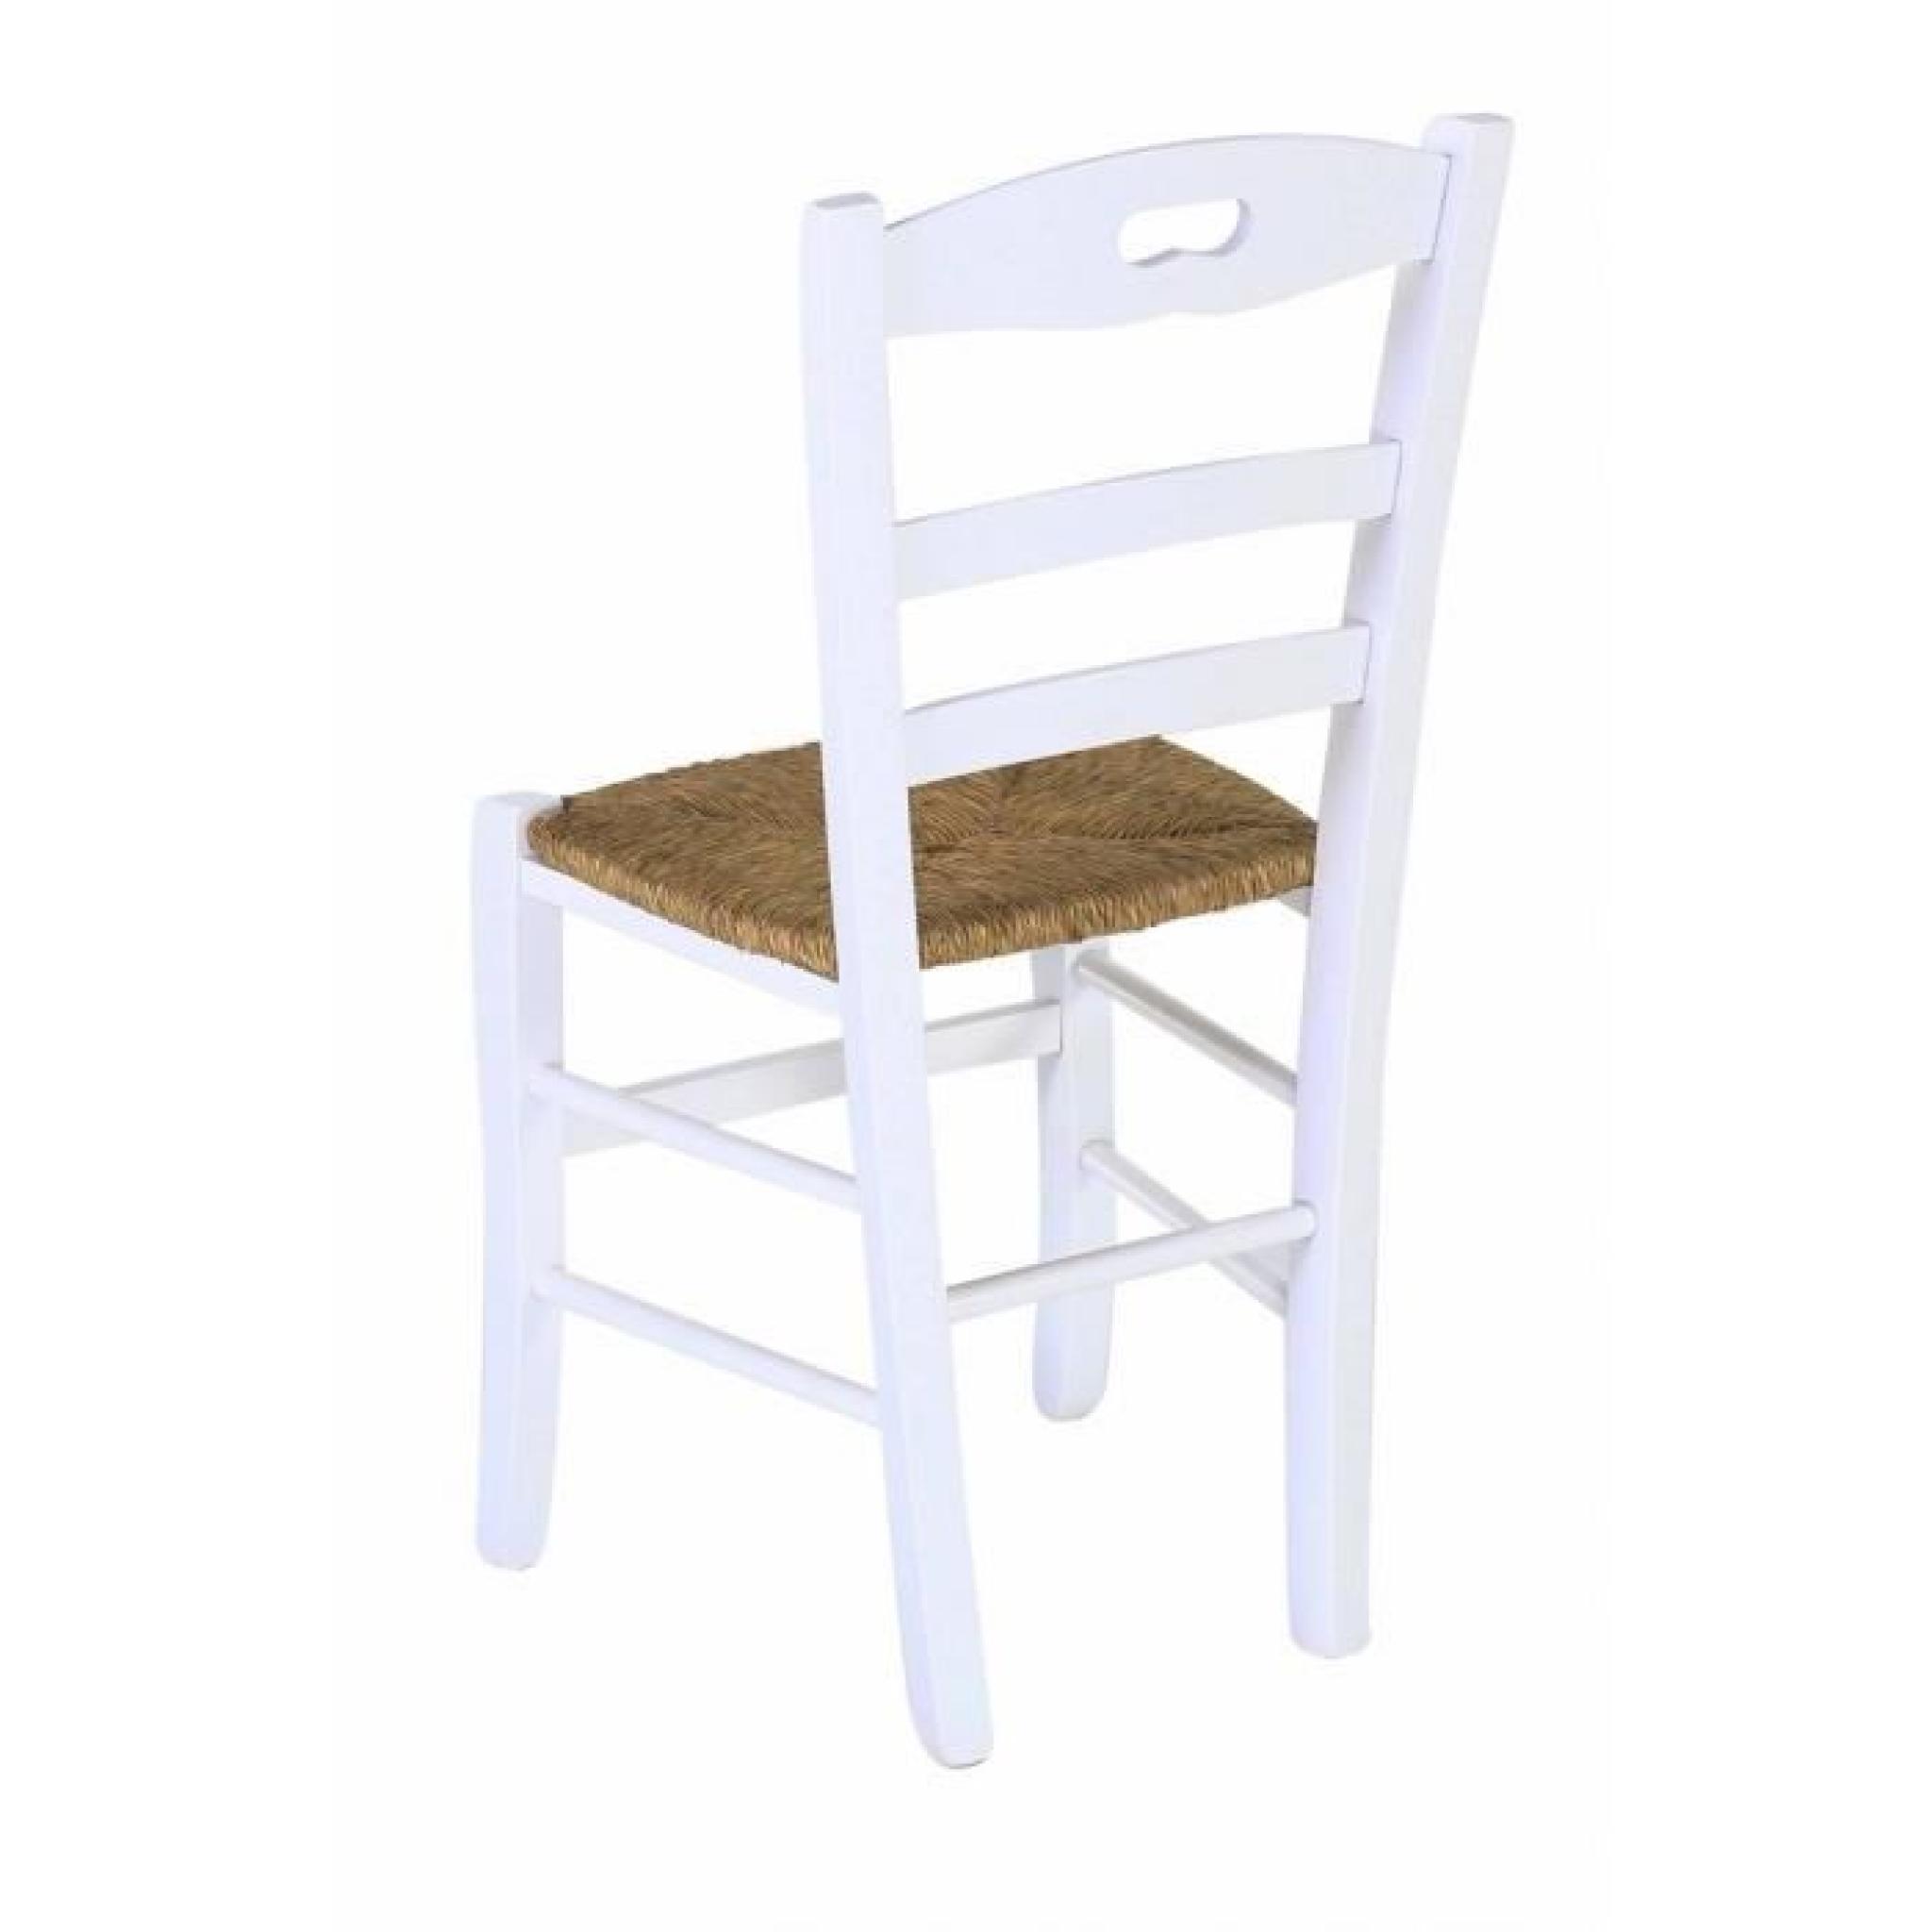 2 x Chaise hêtre massif blanc écusson assise paille Vieugy - Pays pas cher